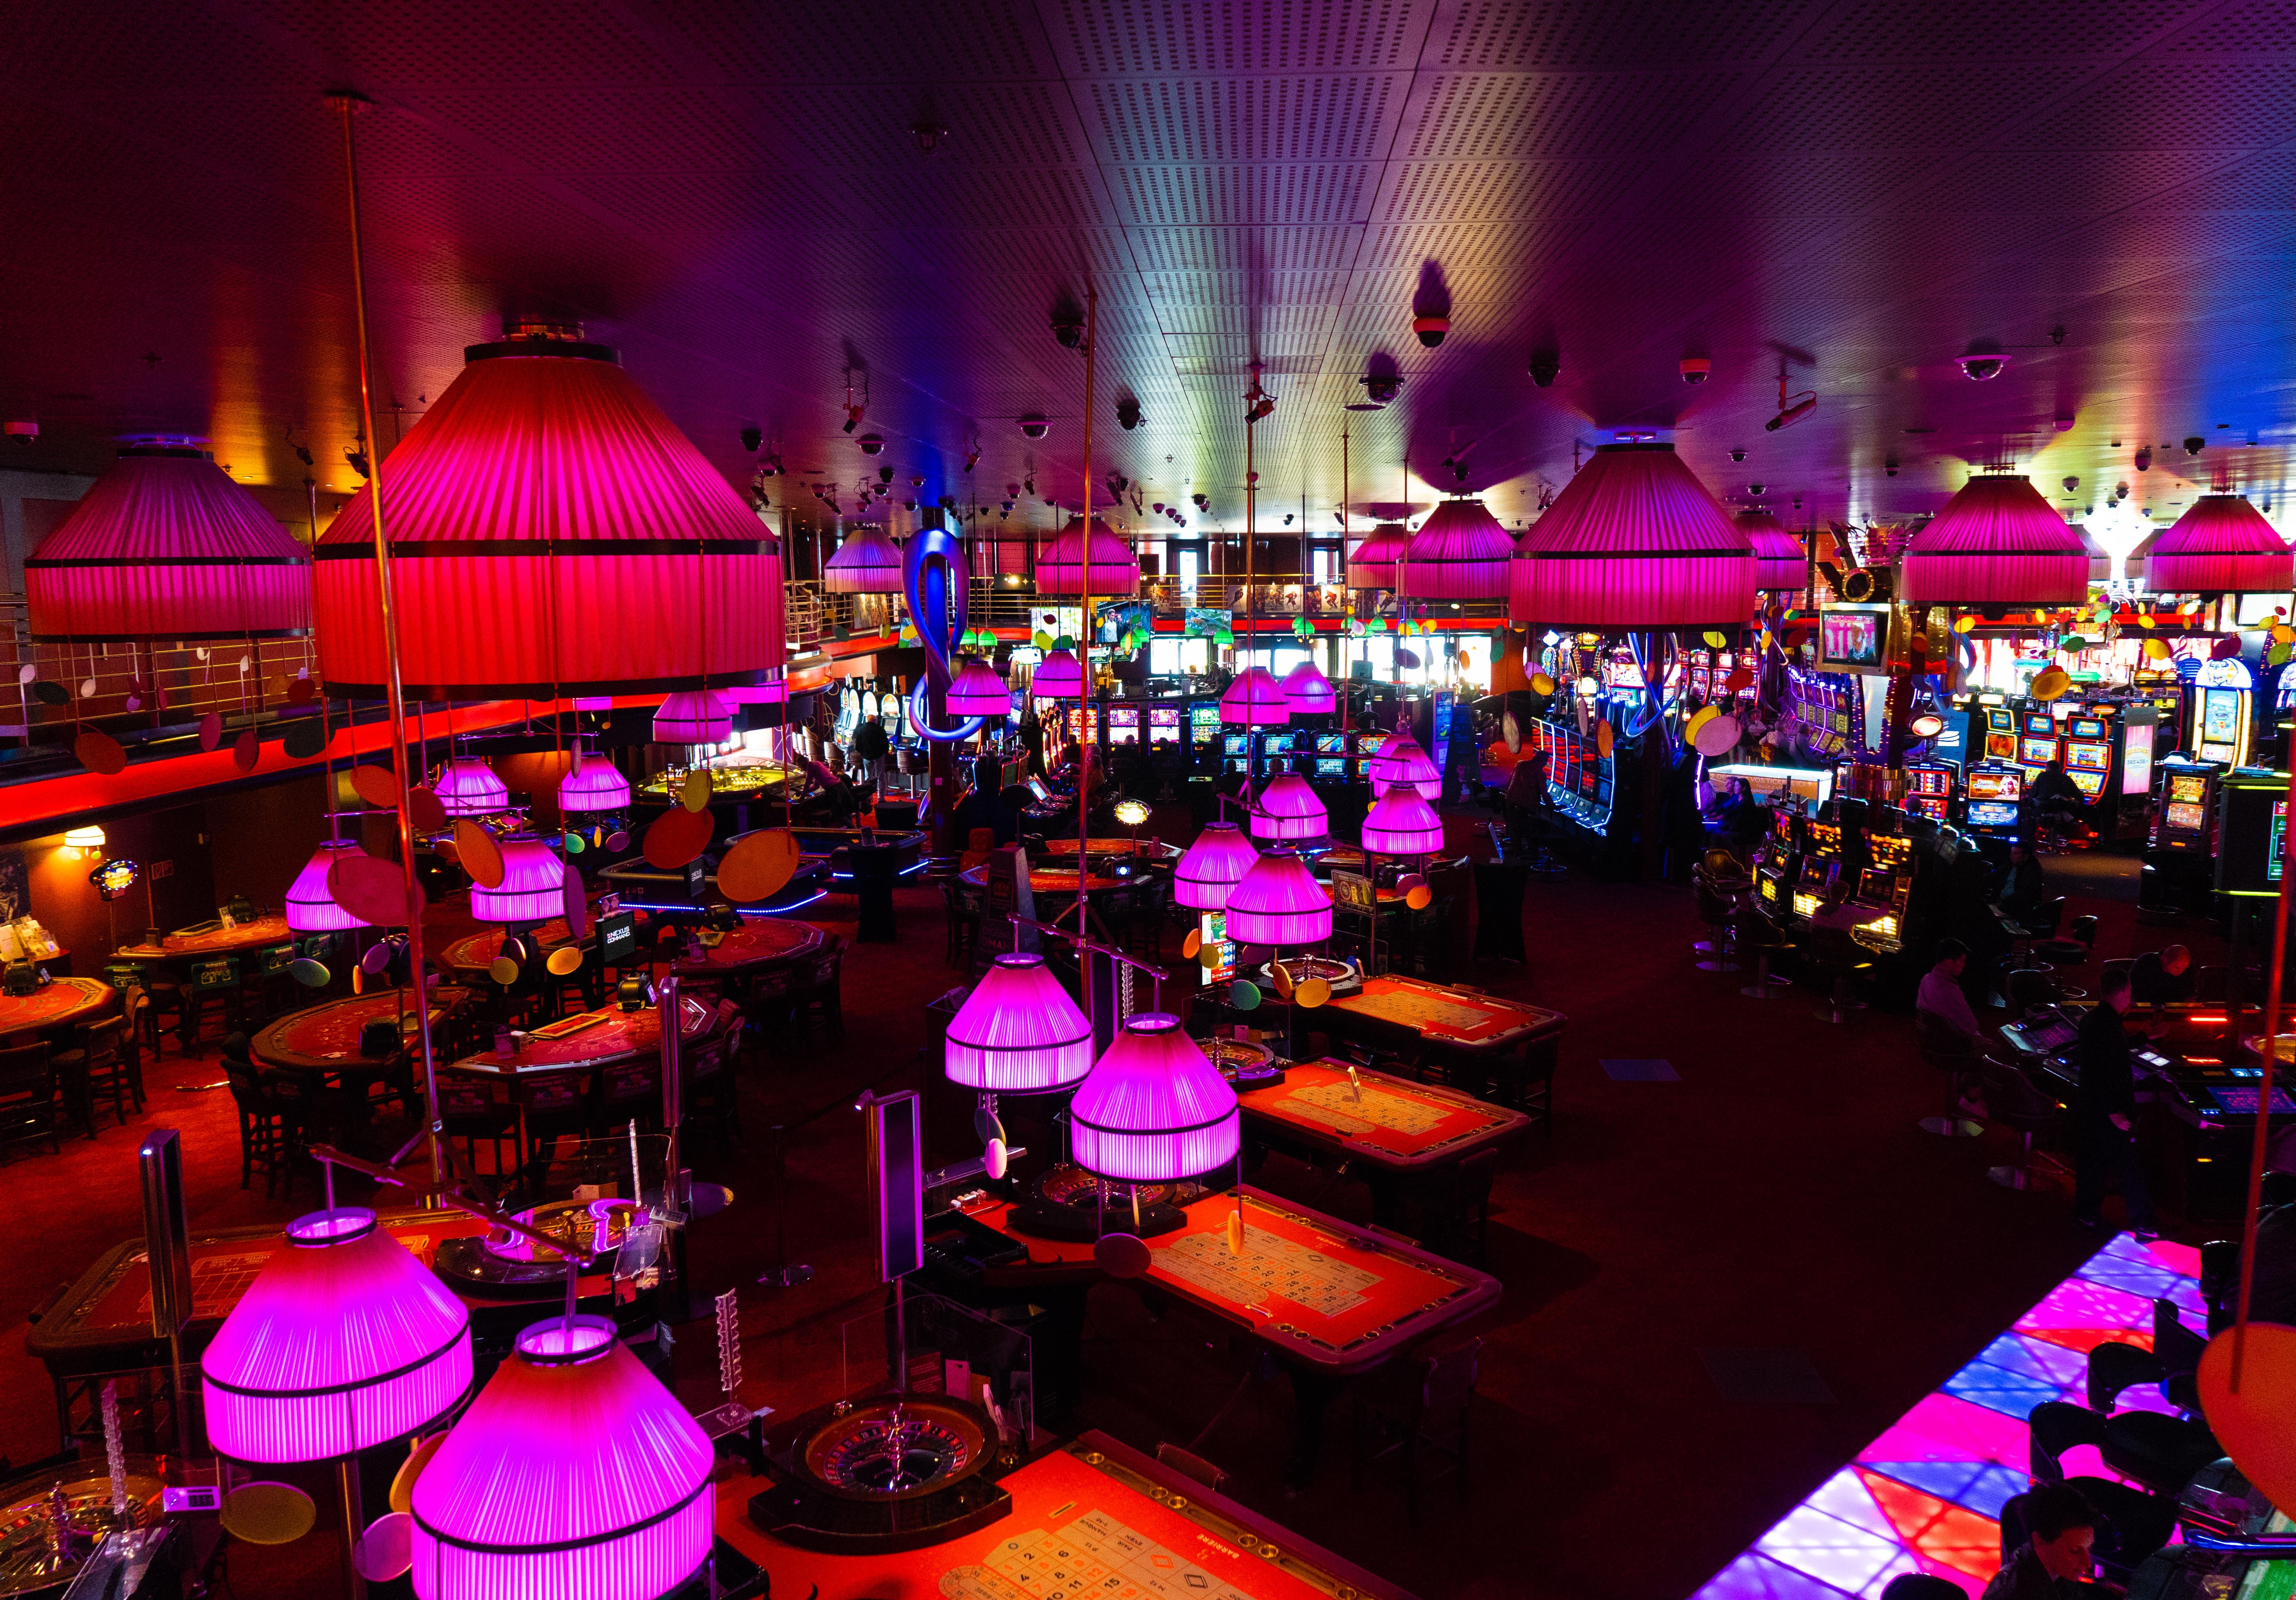 Casino floor with pink lighting